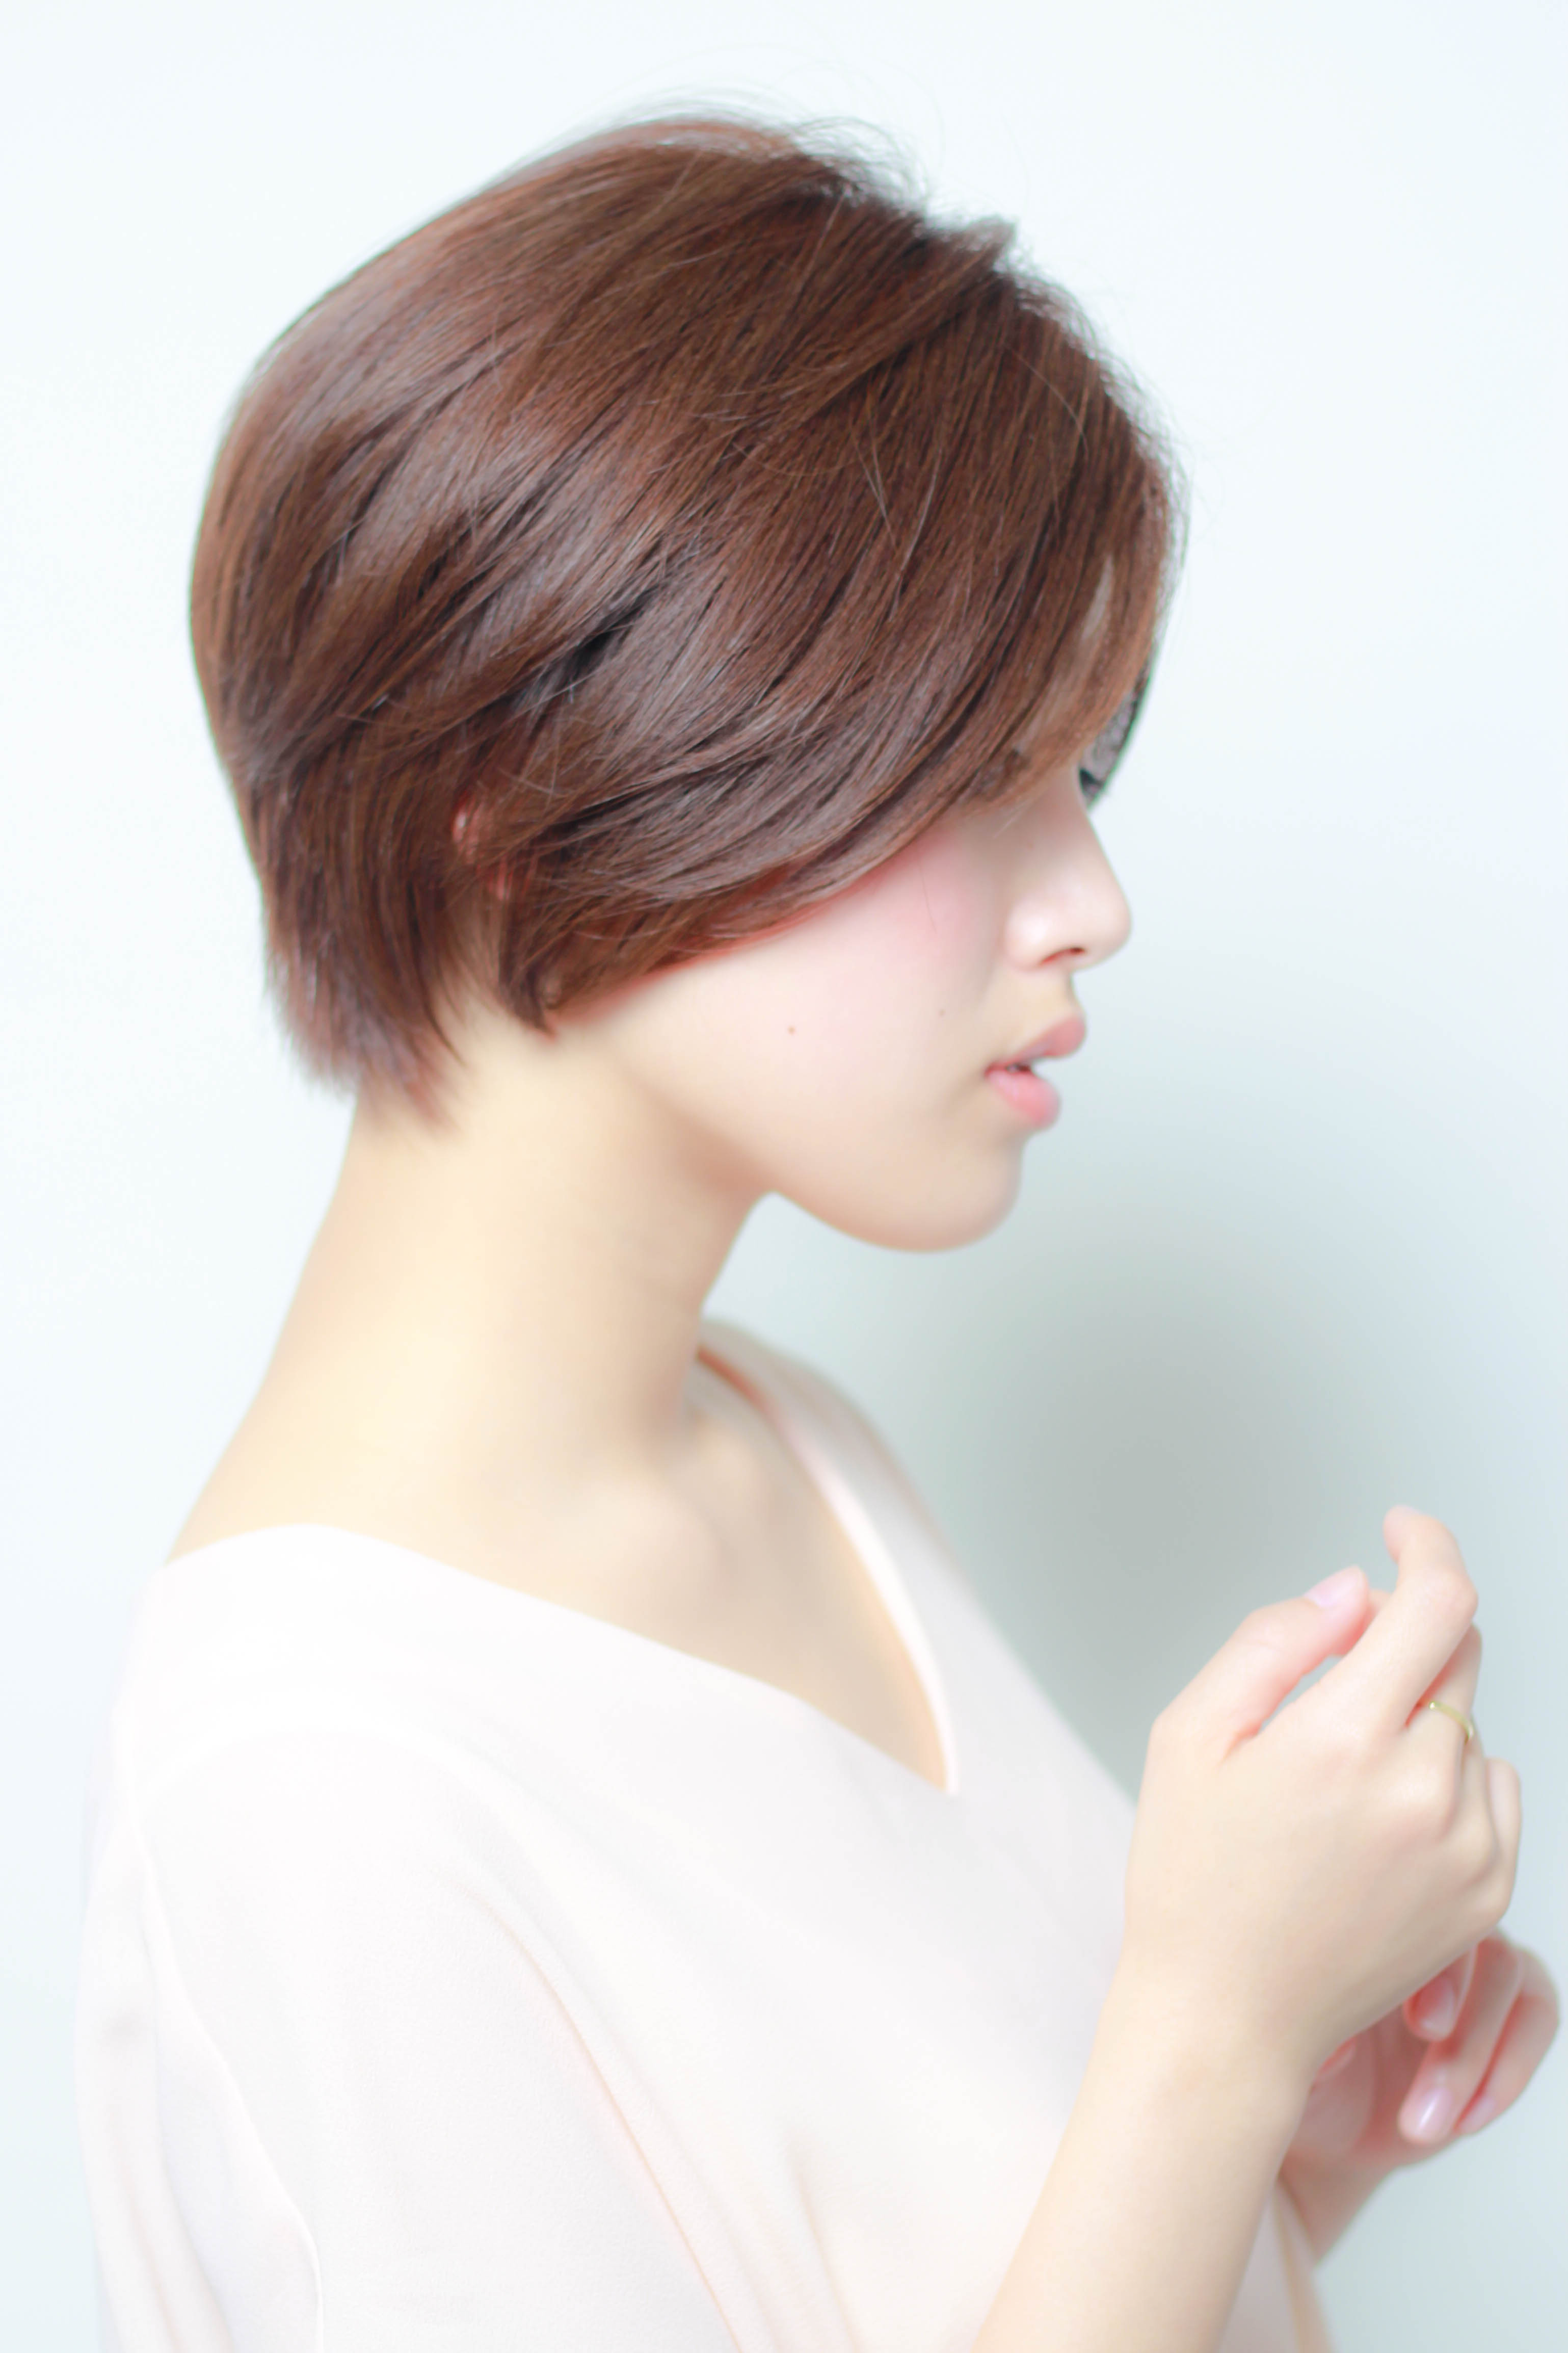 大人っぽい髪型にされたい方へ ショート ボブ ミディアム ロングの髪型２０選 似合わせカットが上手い東京の美容師 美容室minx銀座 蛭田のブログ